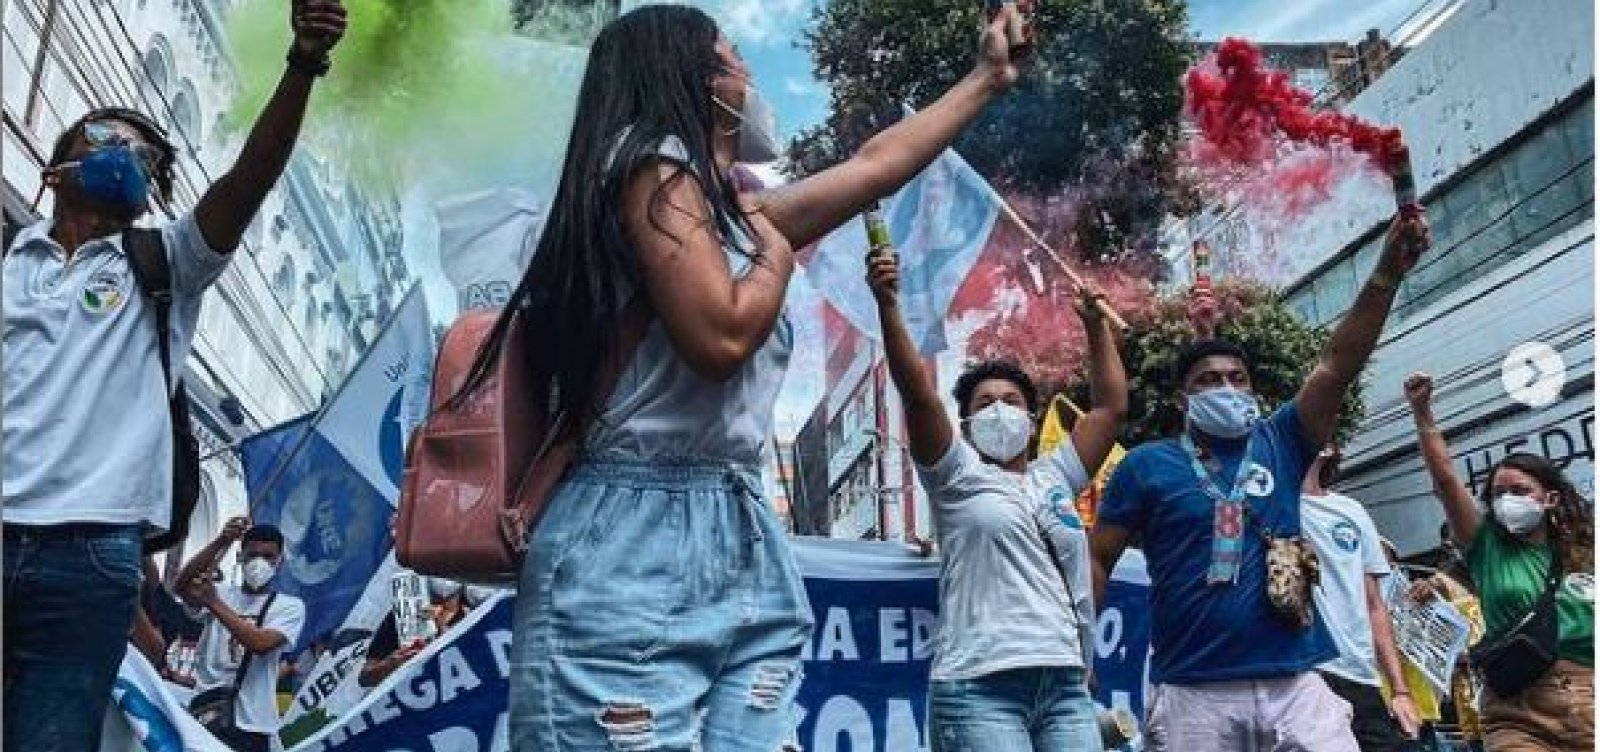 Oposição volta às ruas neste sábado contra Bolsonaro com atos em mais cidades e reforçada por novos apoios